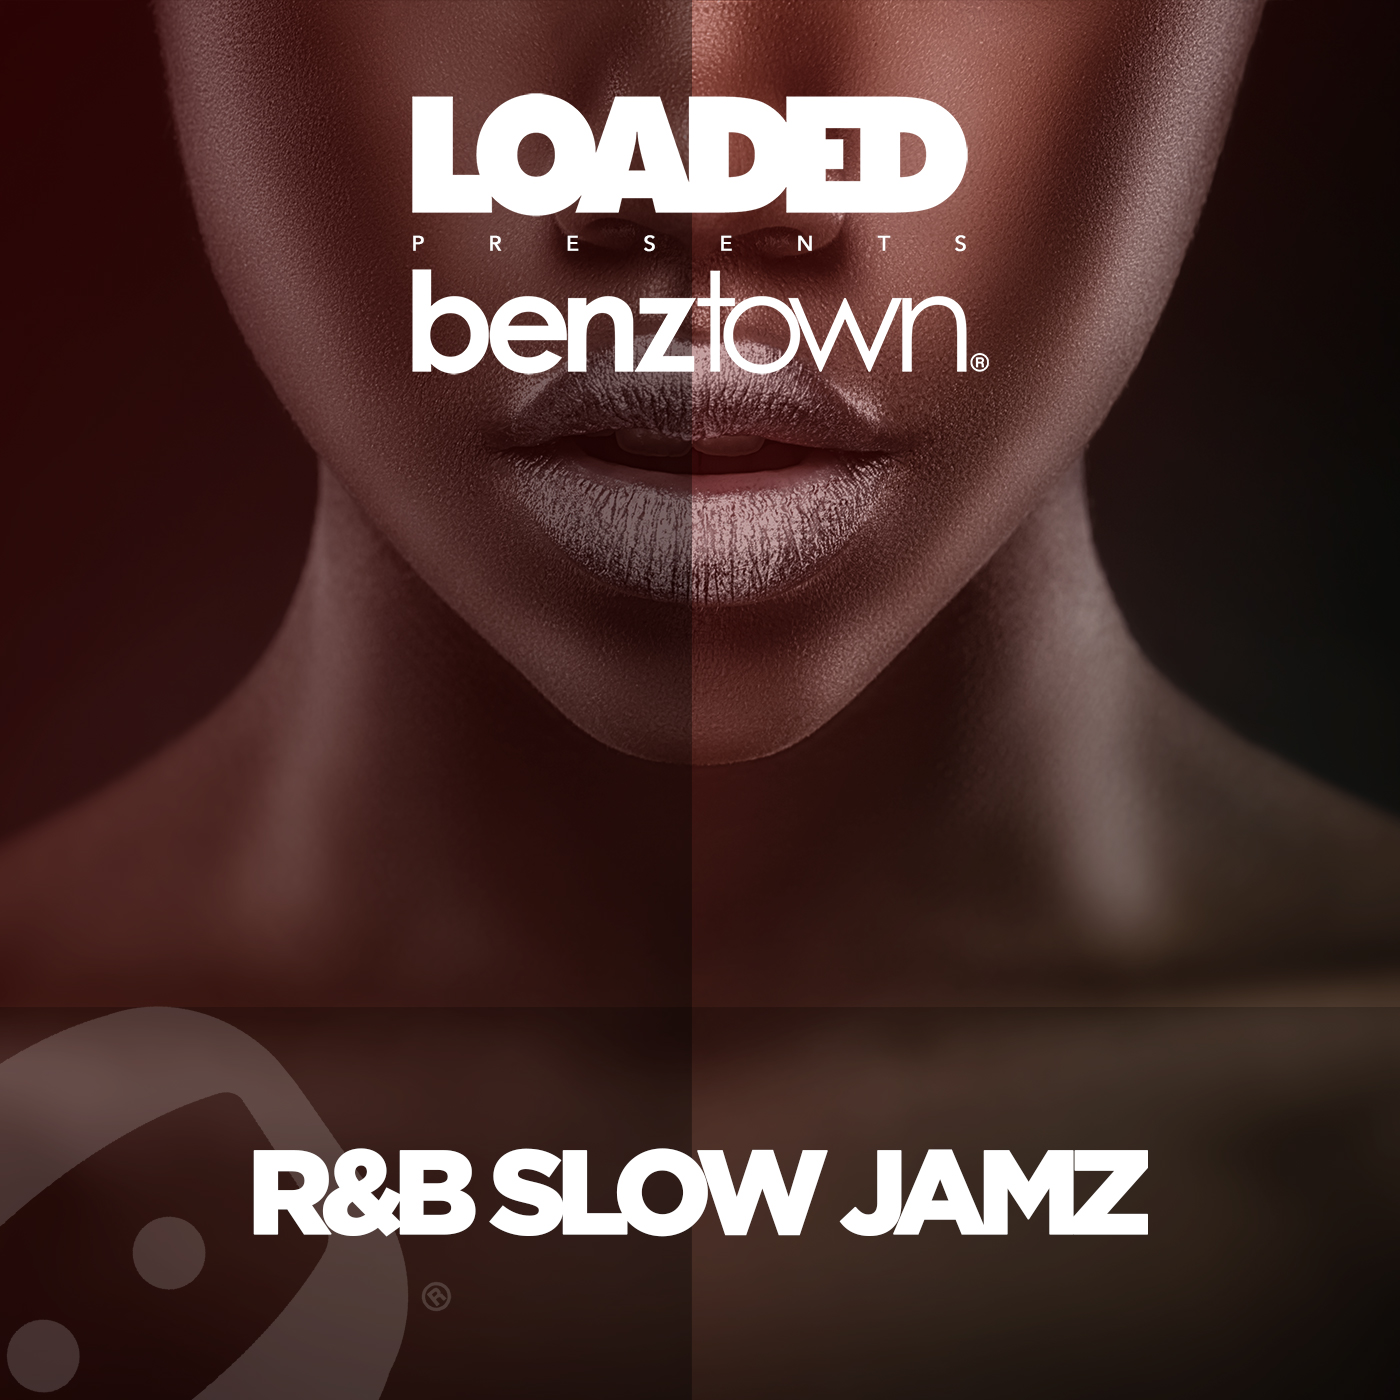 LPM 807 - R&B Slow Jamz - Album Cover